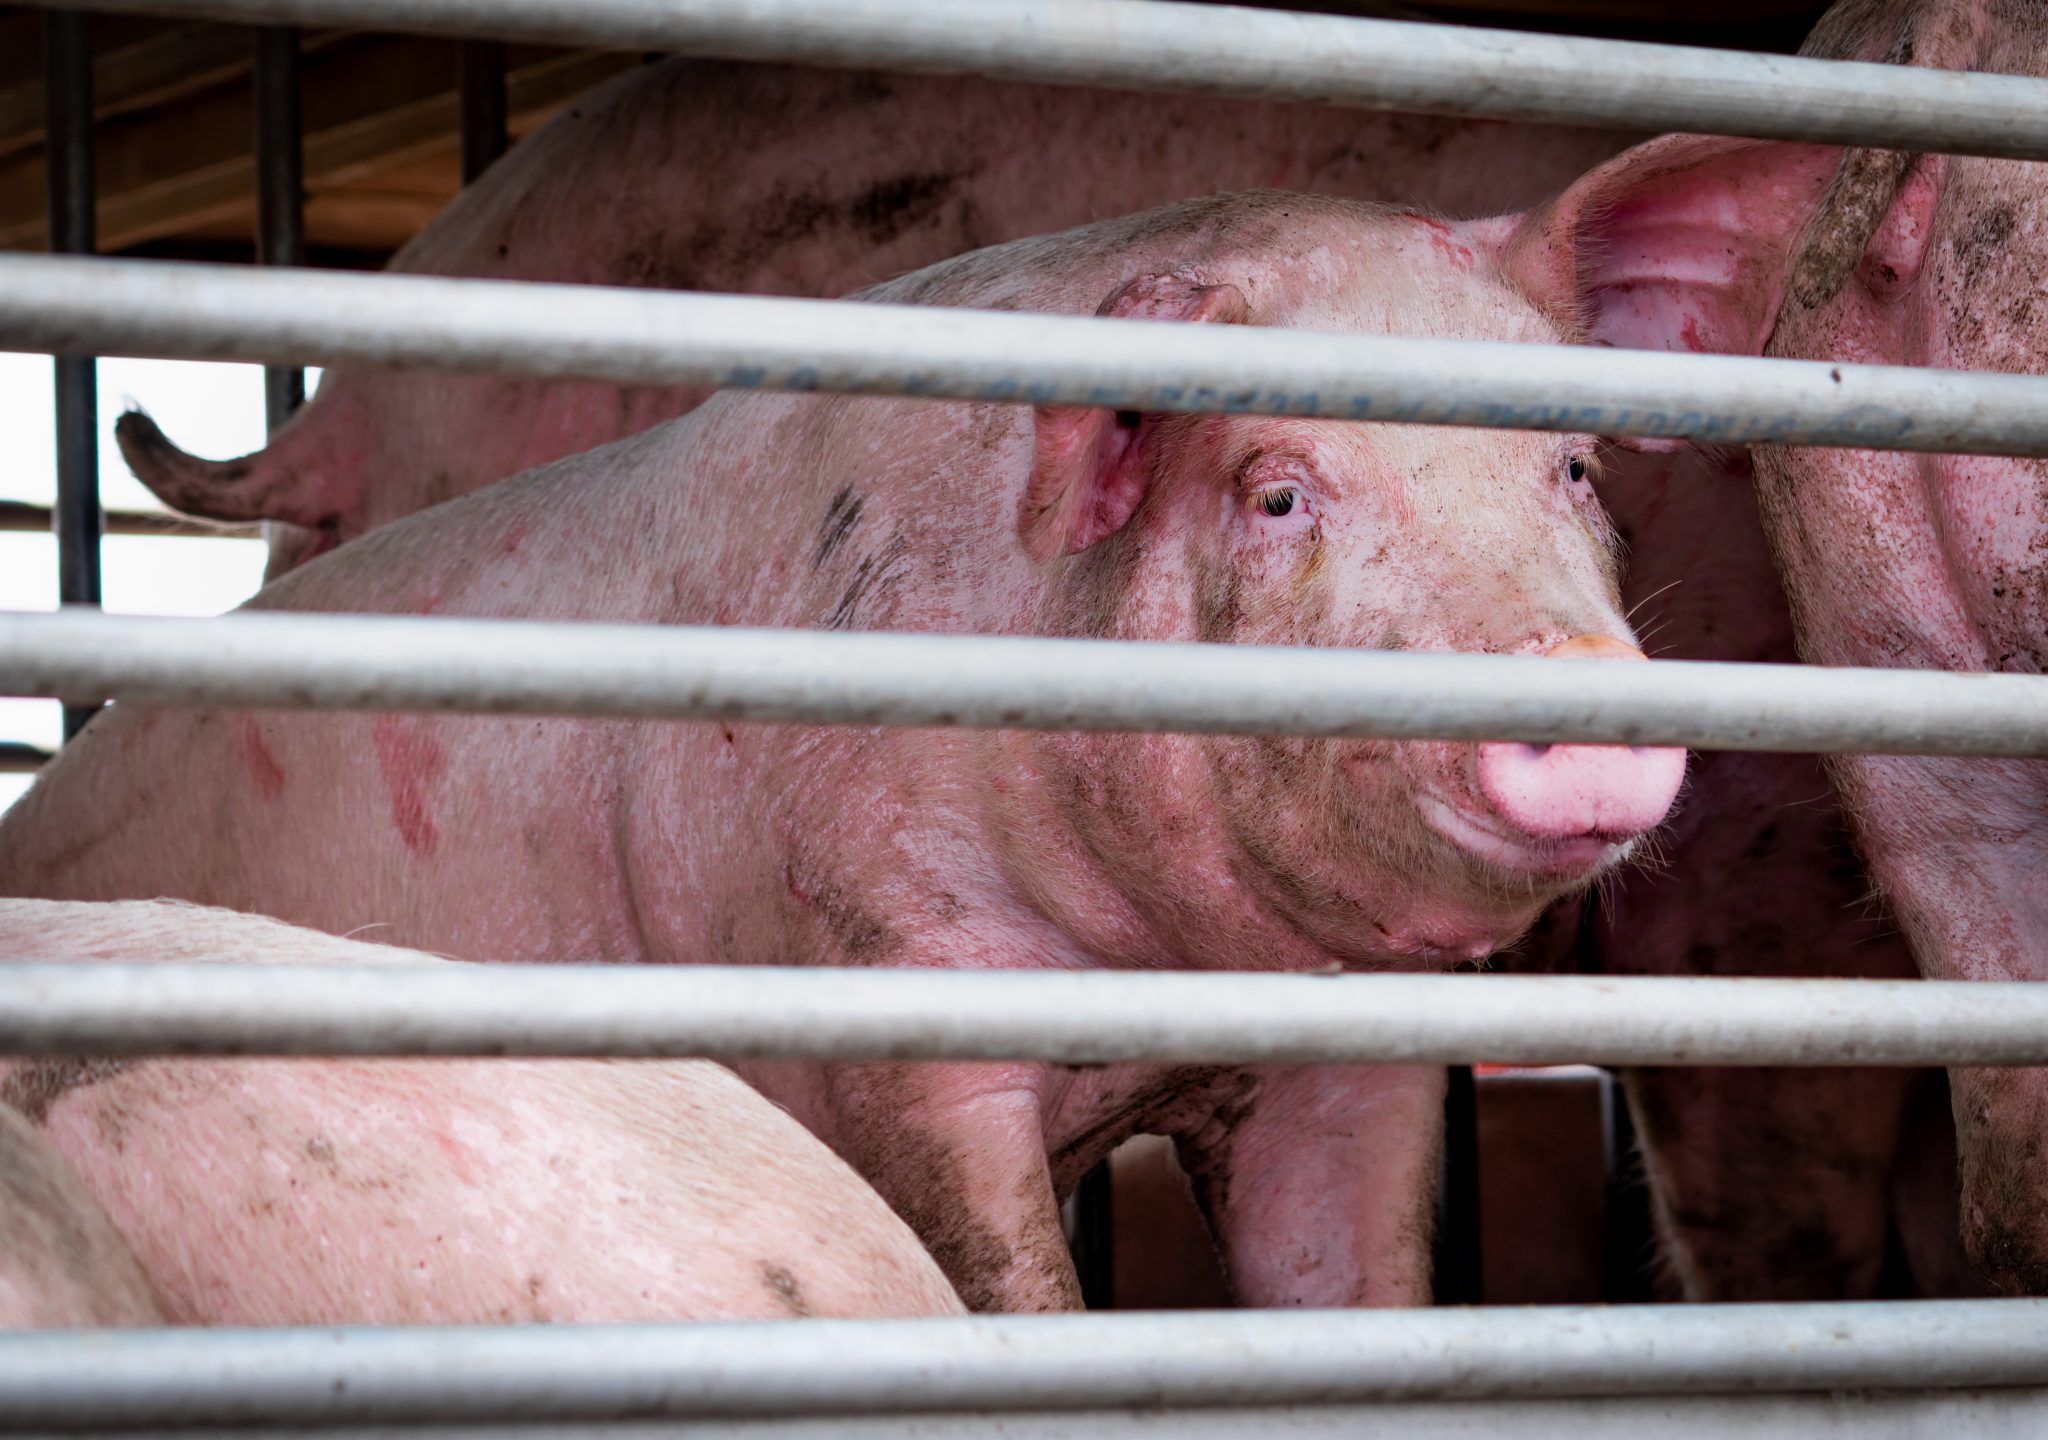 LIGE NU: To væltede grisetransporter skaber trafikale problemer